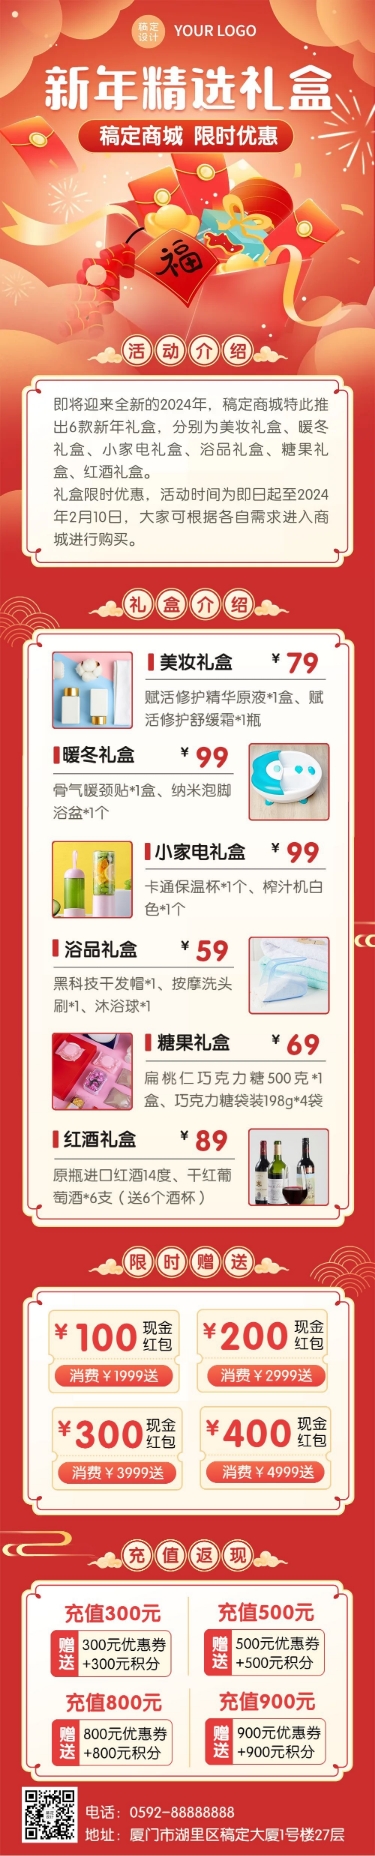 新年春节节日礼盒促销文章长图